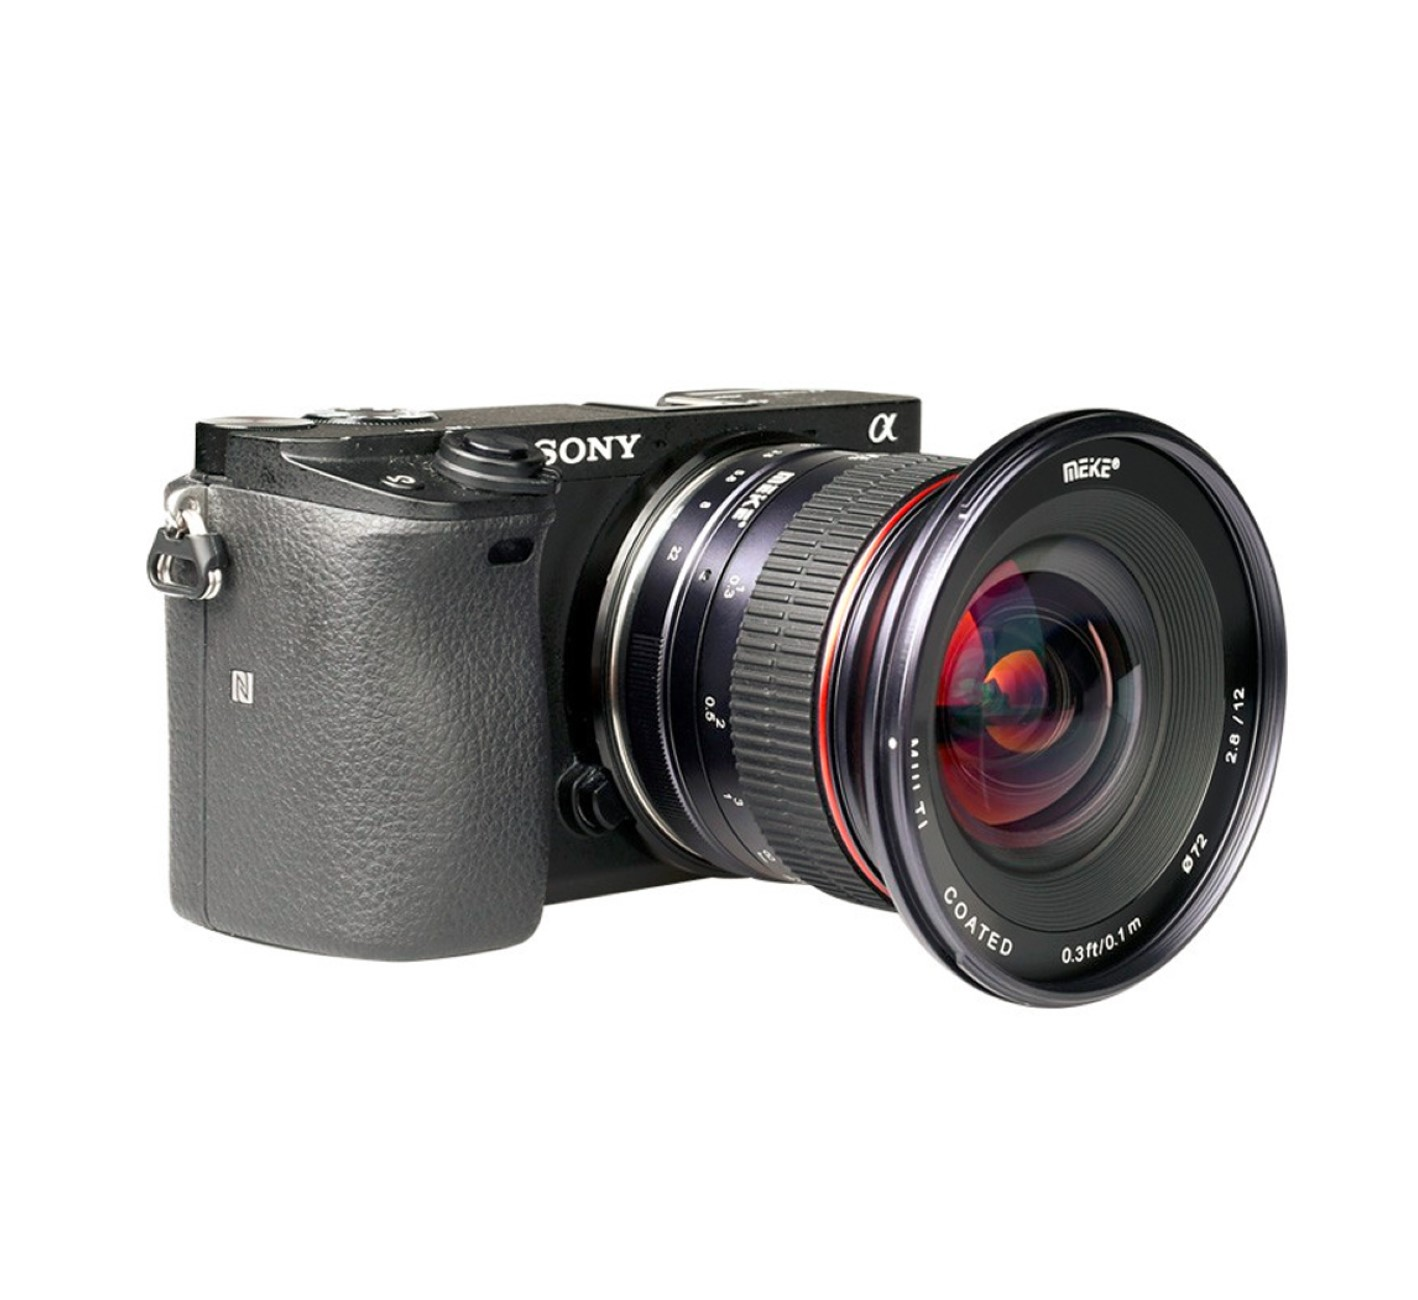 MEIKE 12mm f2.8 Ultra-Weitwinkelobjektiv, für Schwarz Fujifilm X-Mount